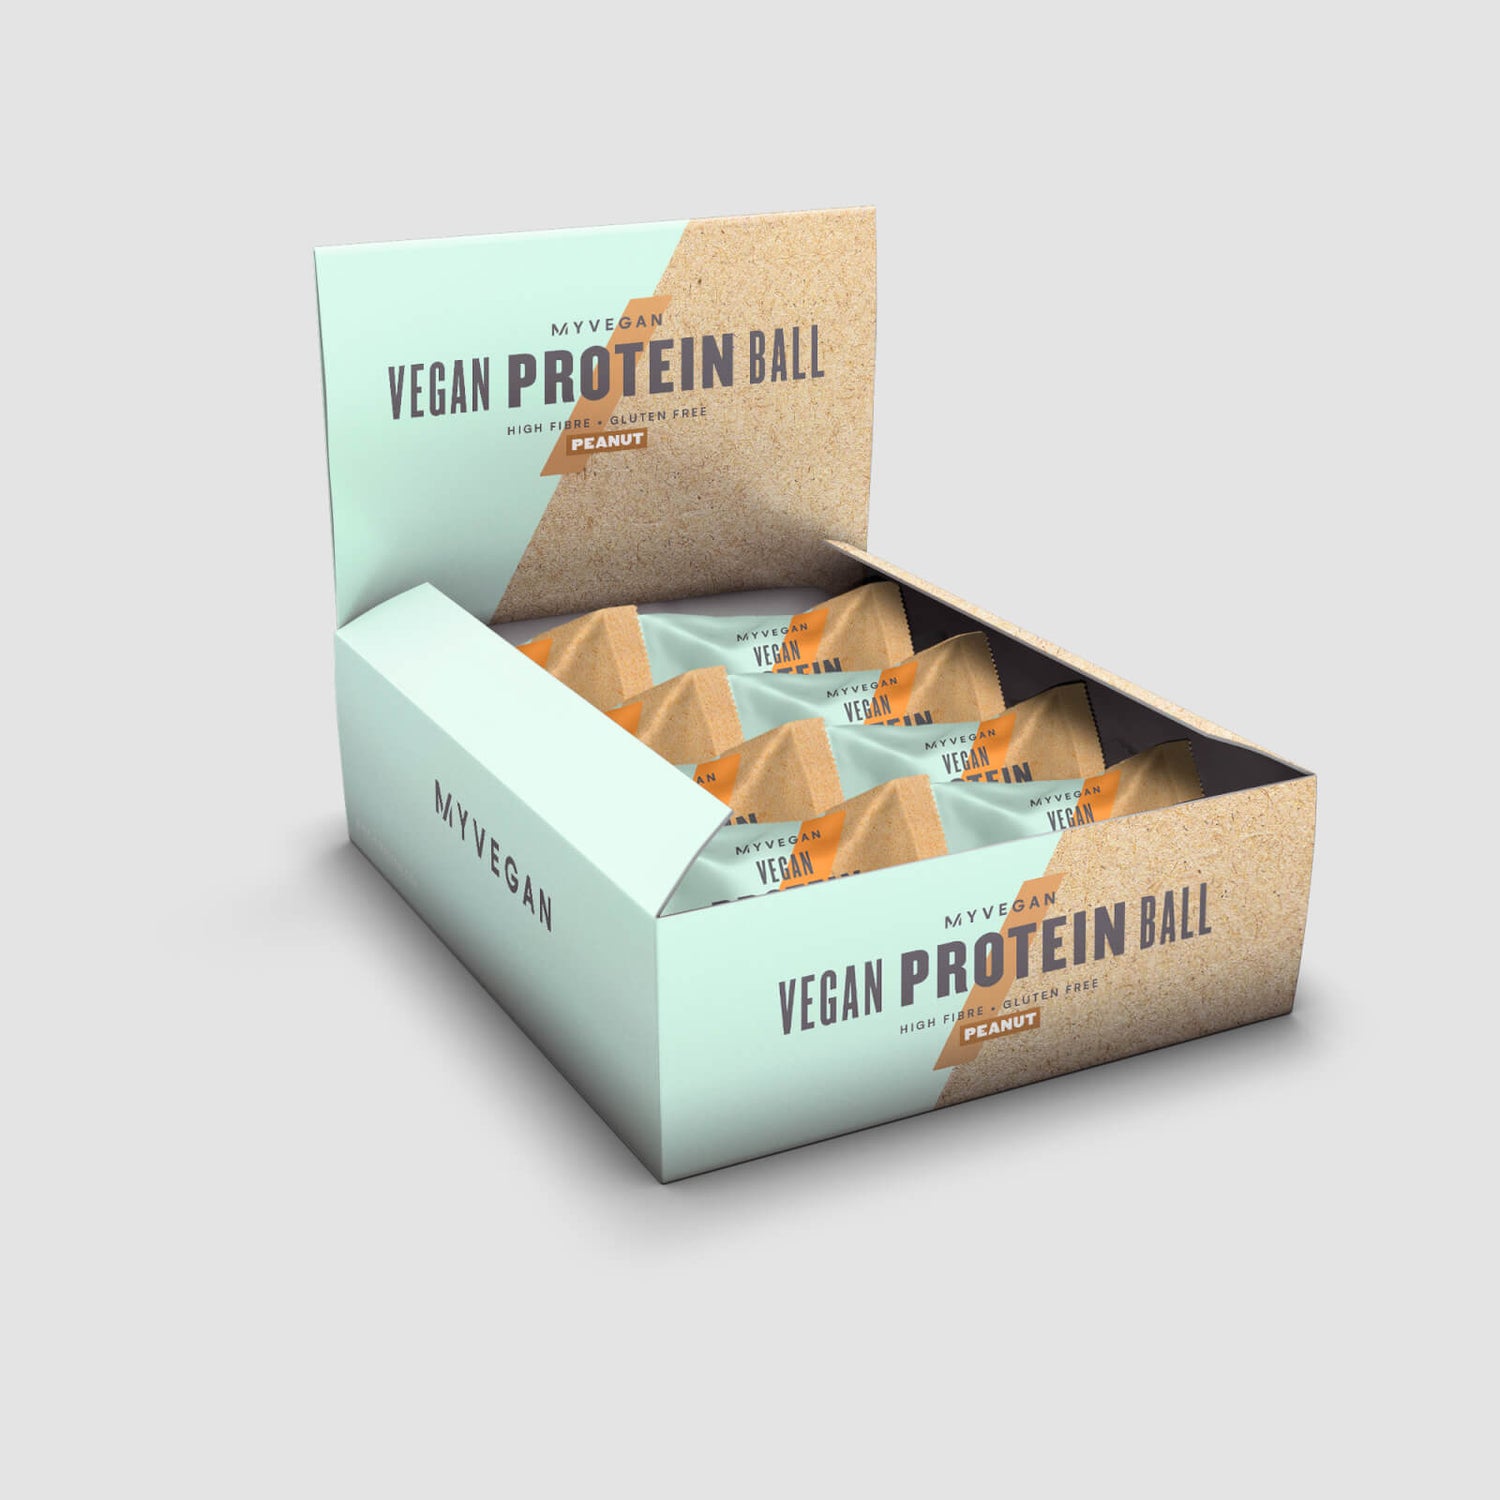 Myprotein Vegan Protein Balls